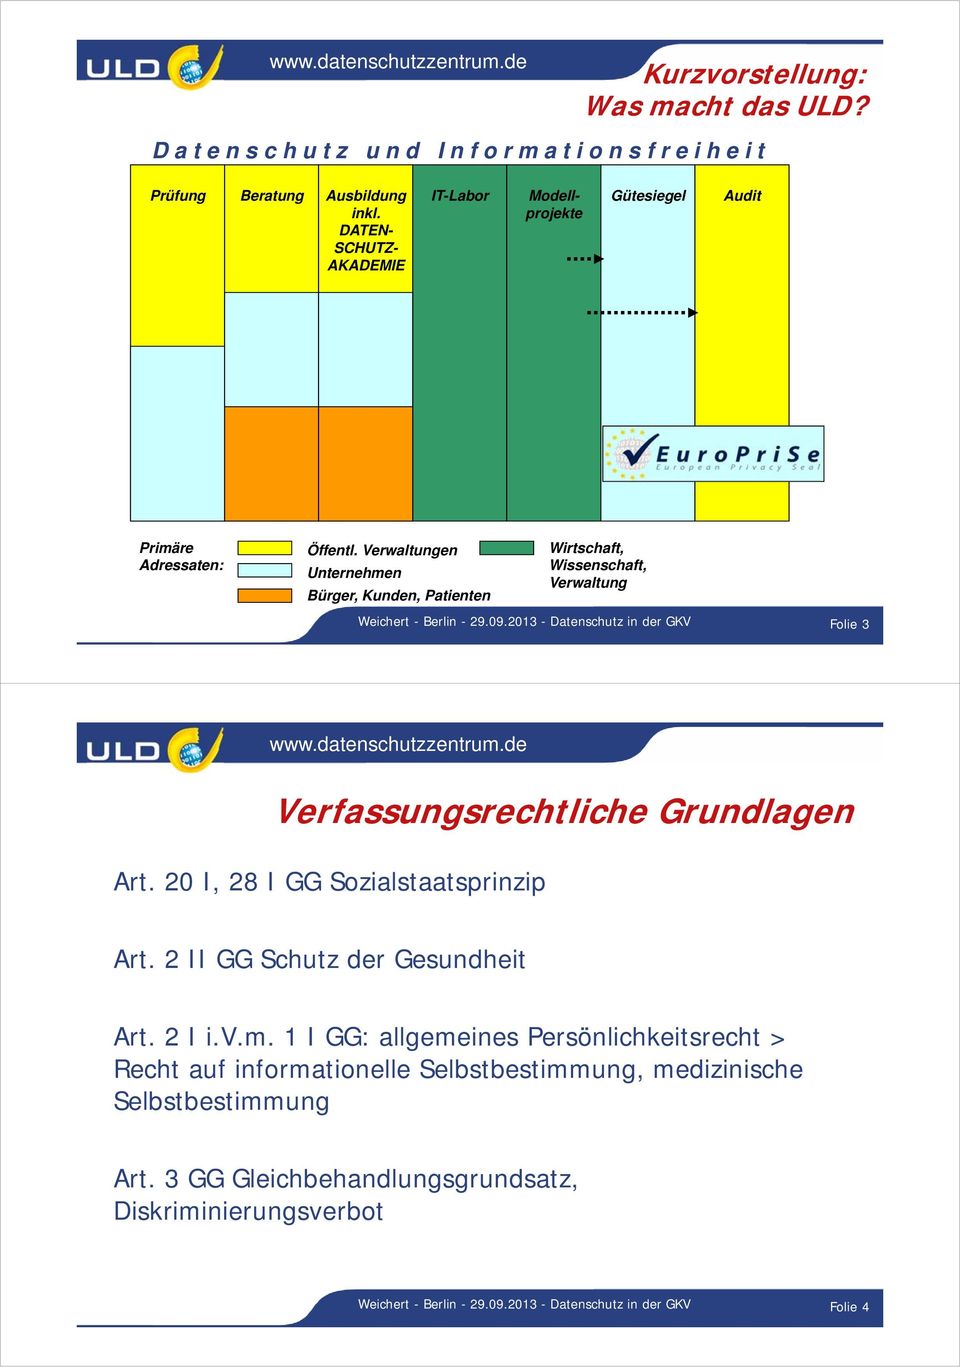 Verwaltungen Unternehmen Bürger, Kunden, Patienten Wirtschaft, Wissenschaft, Verwaltung Weichert - Berlin - 29.09.